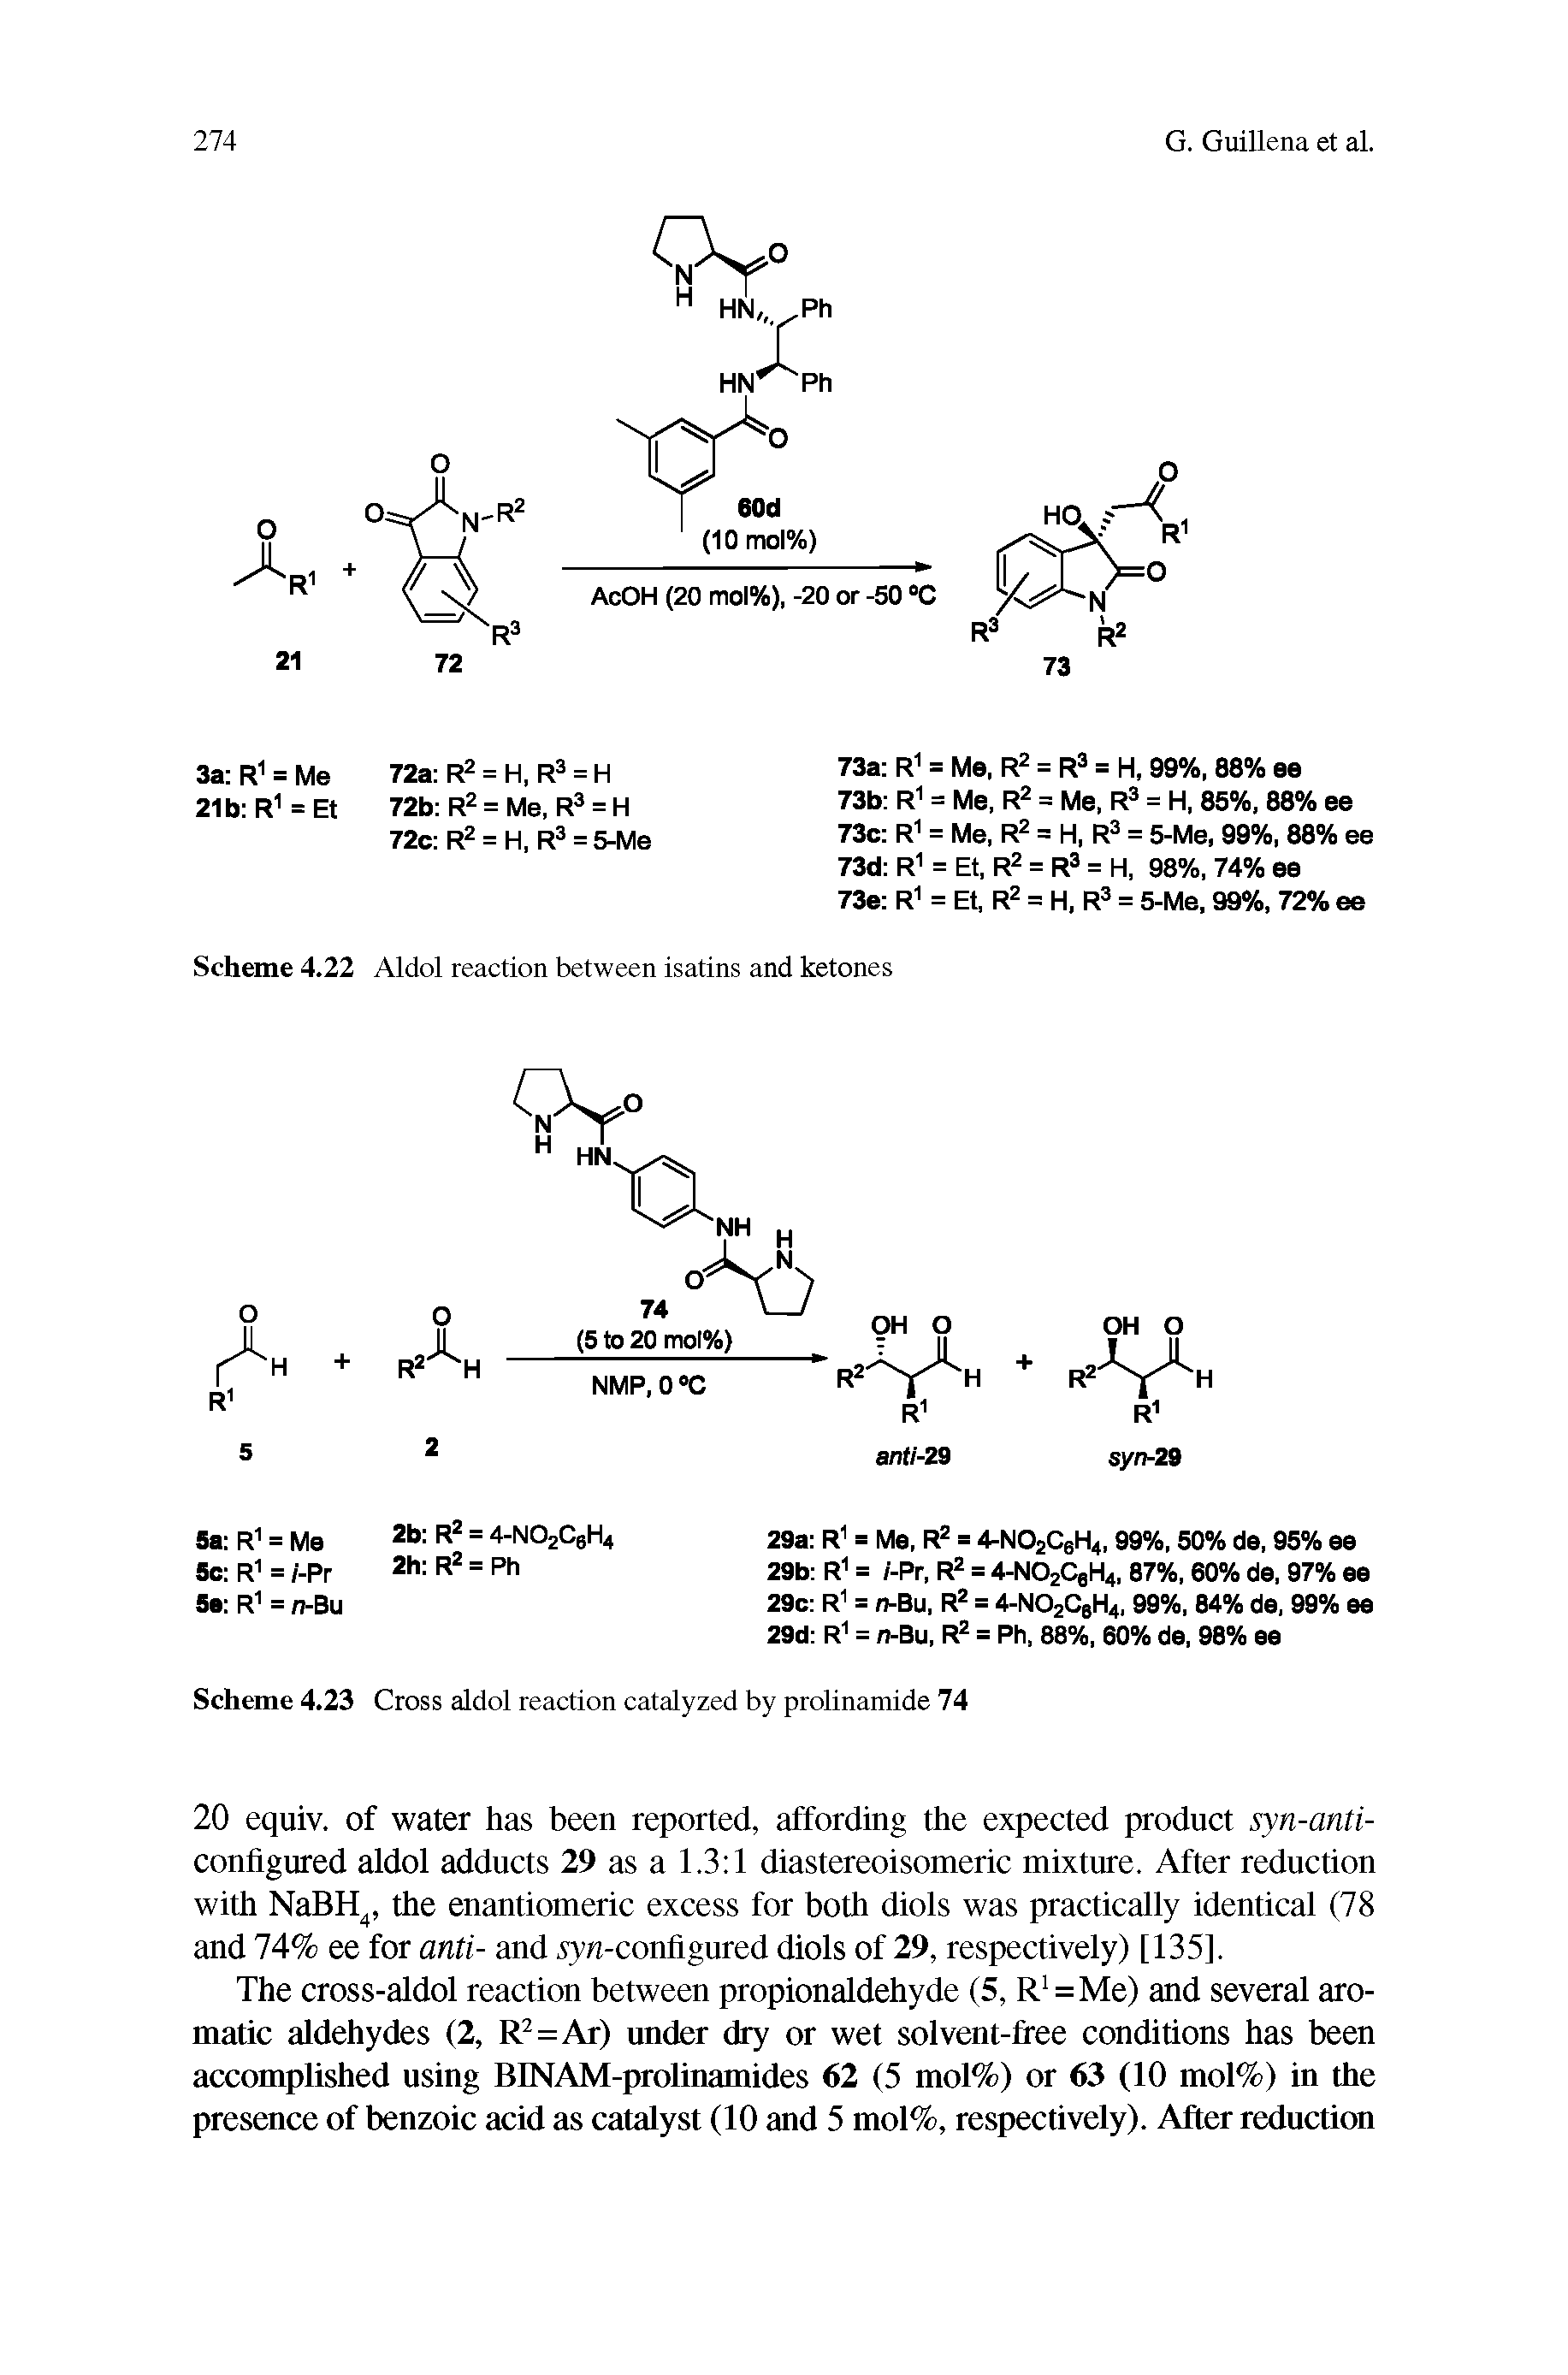 Scheme 4.23 Cross aldol reaction catalyzed by prolinamide 74...